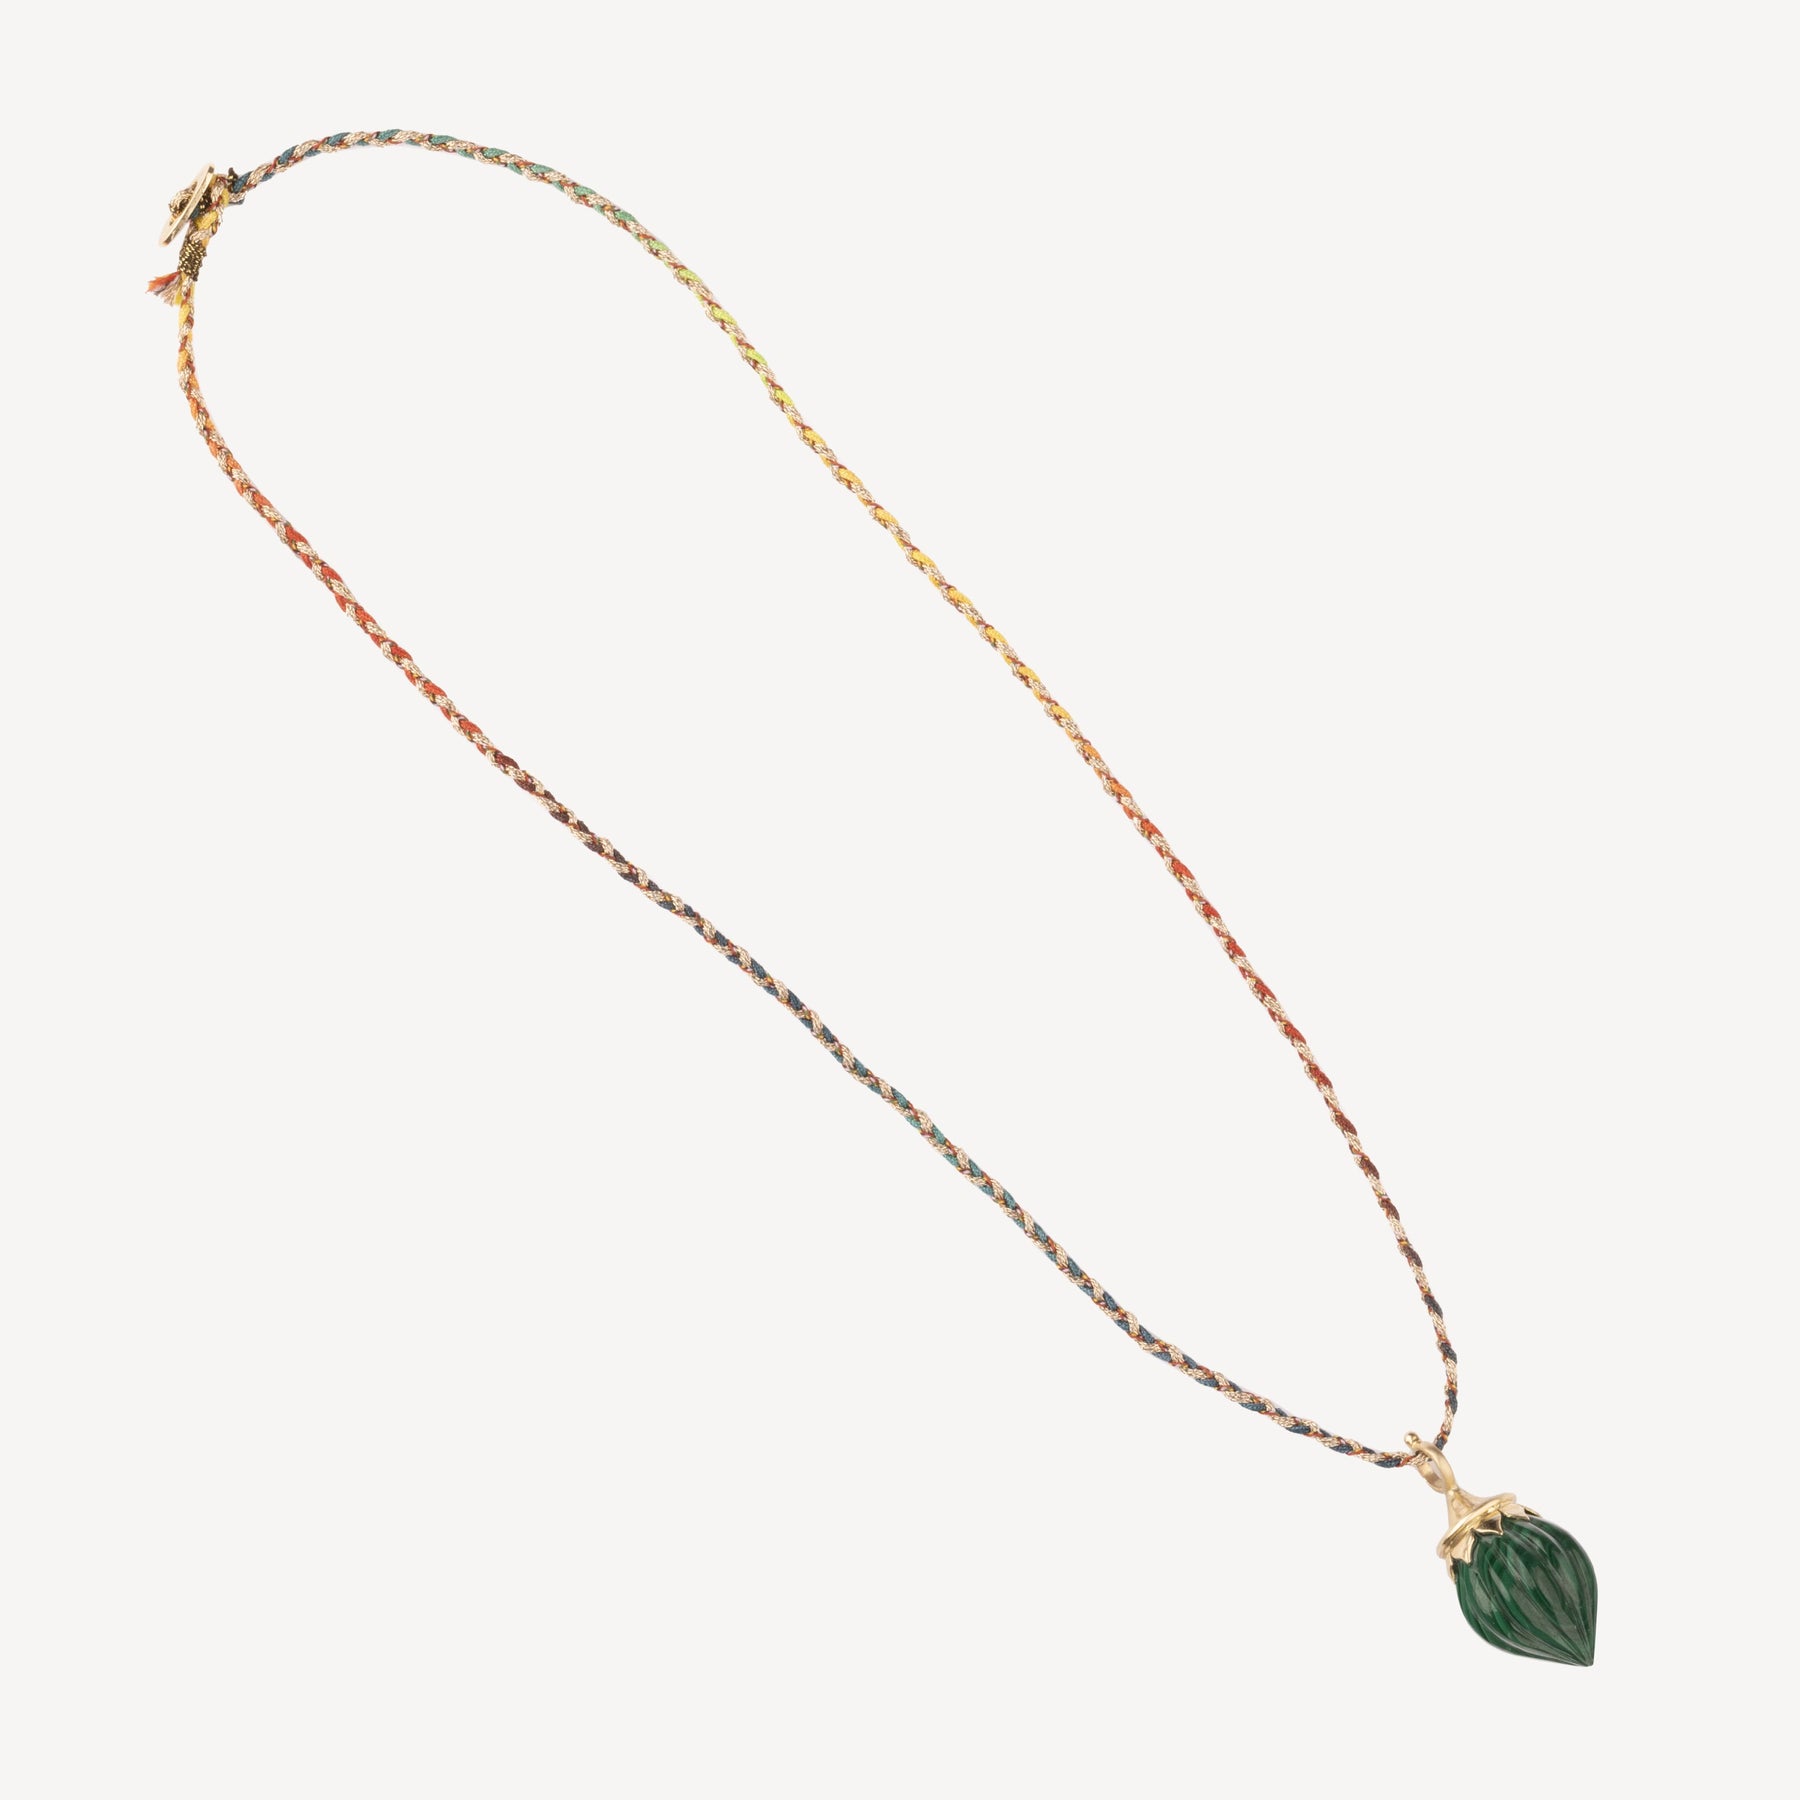 Green malachite necklace